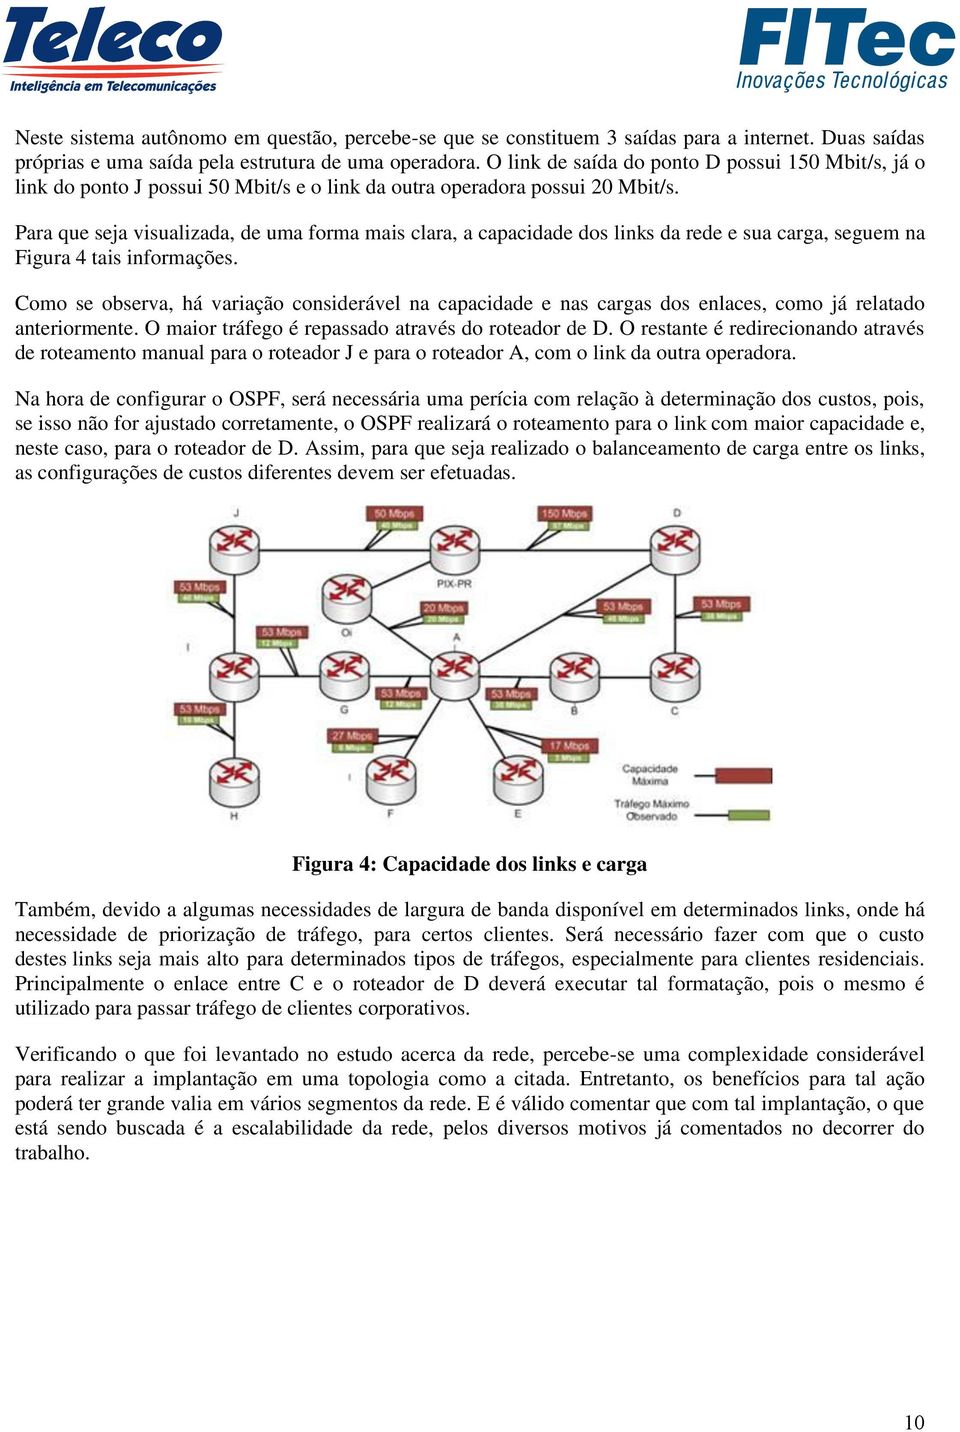 Para que seja visualizada, de uma forma mais clara, a capacidade dos links da rede e sua carga, seguem na Figura 4 tais informações.